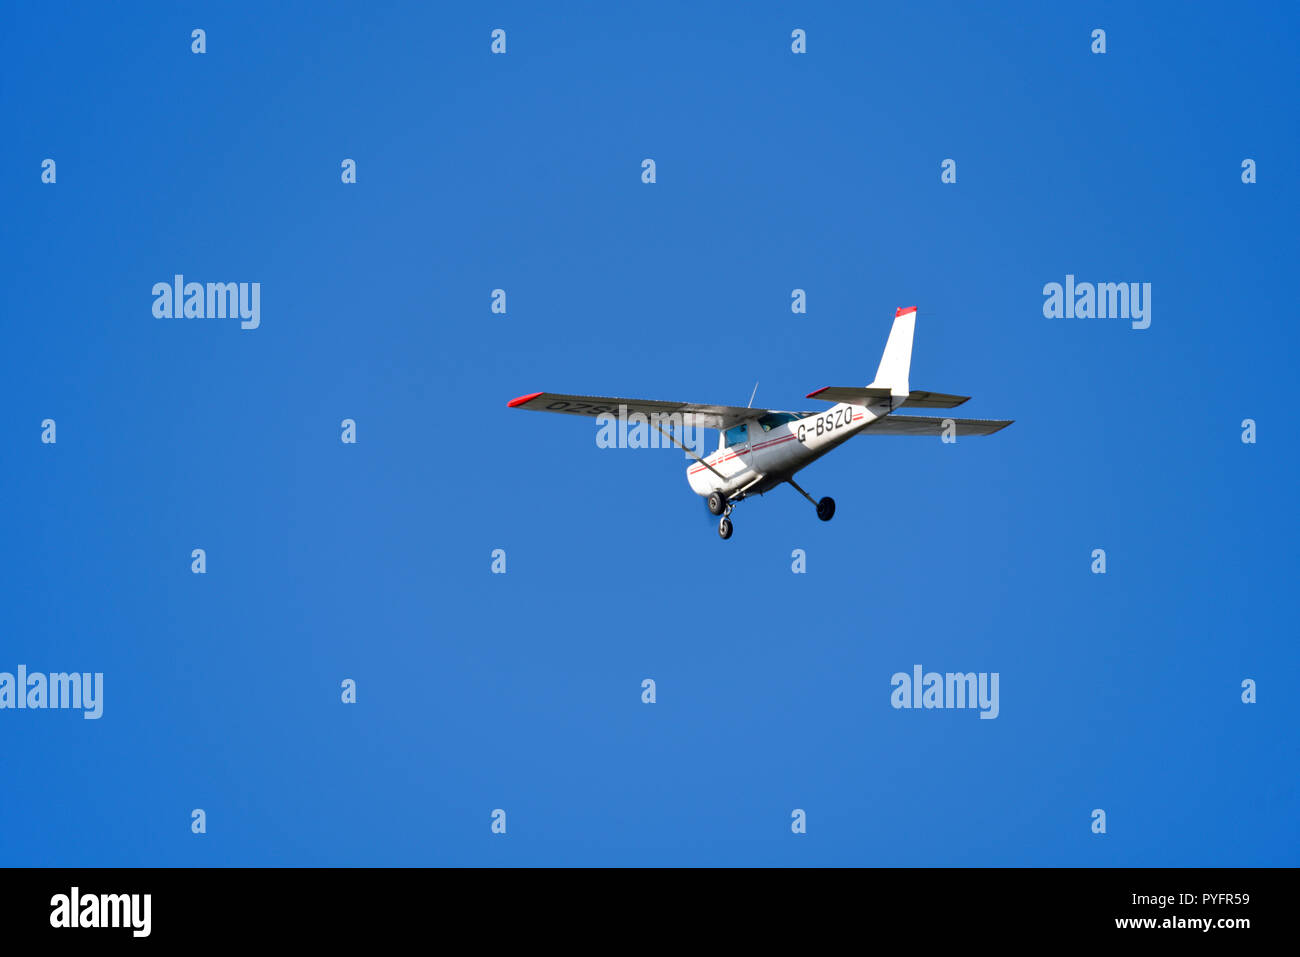 Avion léger Cessna 152 volant dans le ciel bleu. Avion d'aviation générale G-BSZO aéroporté en visibilité claire, vfr, règles de vol à vue Banque D'Images